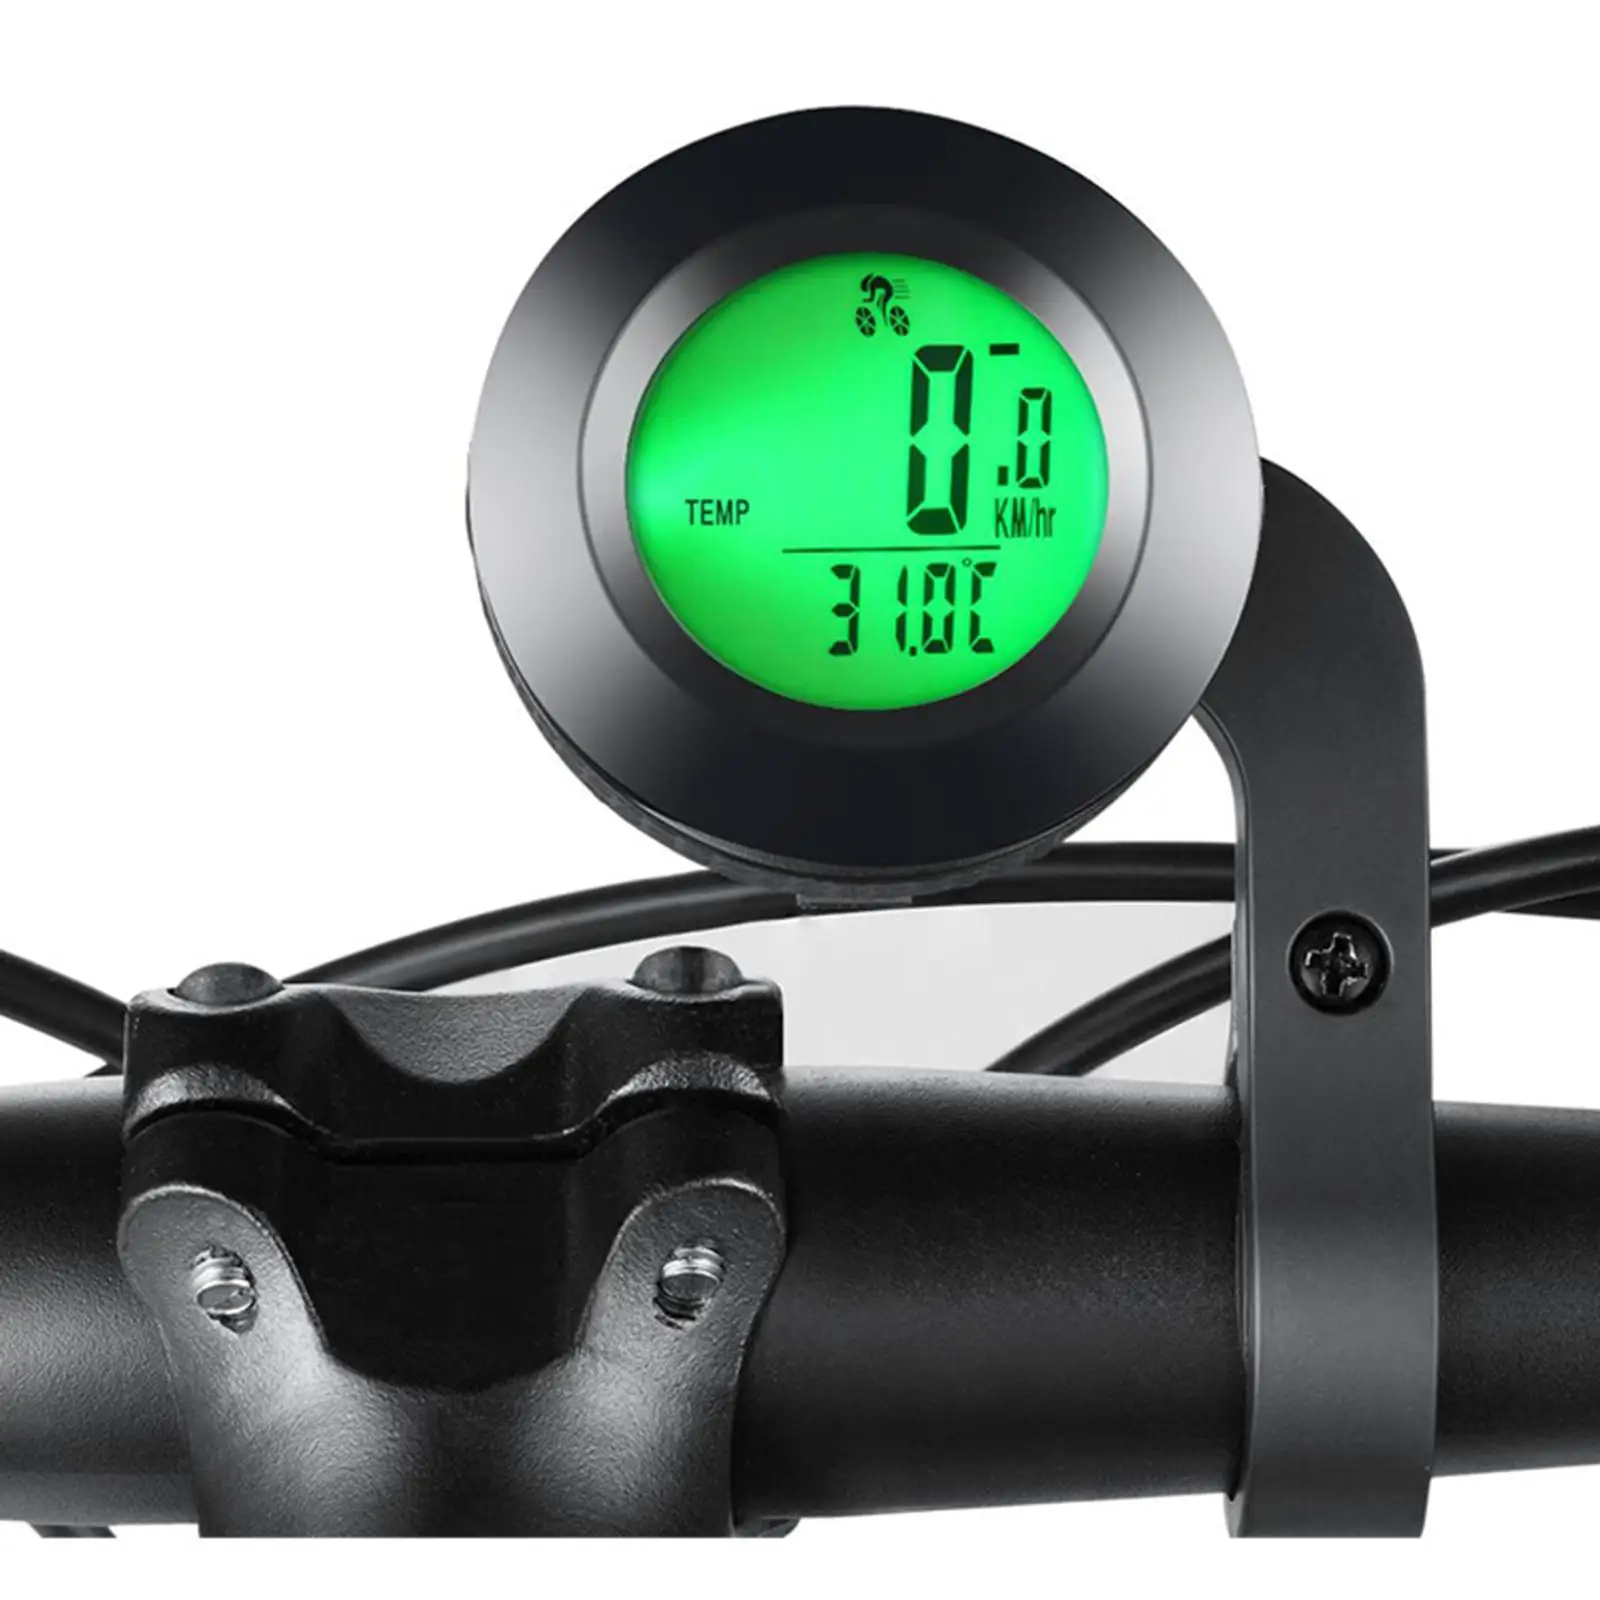 Wireless Bike Computer Cycle Speedometer LCD Display Digital Waterproof for Bicycle Road Bike MTB Accessories Easy Installation